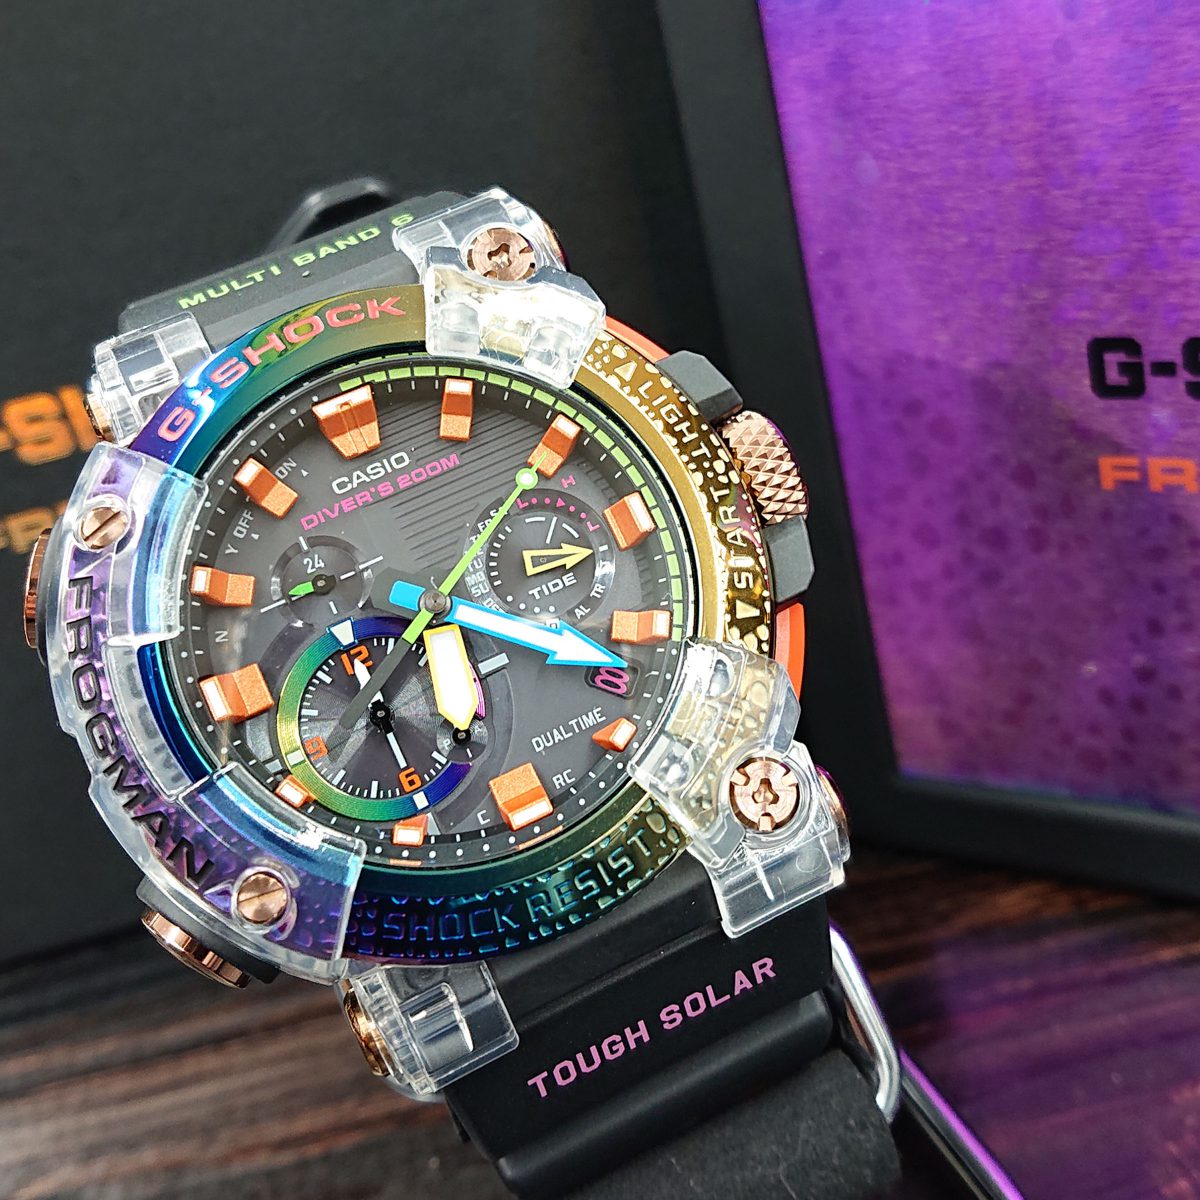 腕時計(デジタル)gwf-a1000brt-1ajr フロッグマン レインボー - 腕時計 